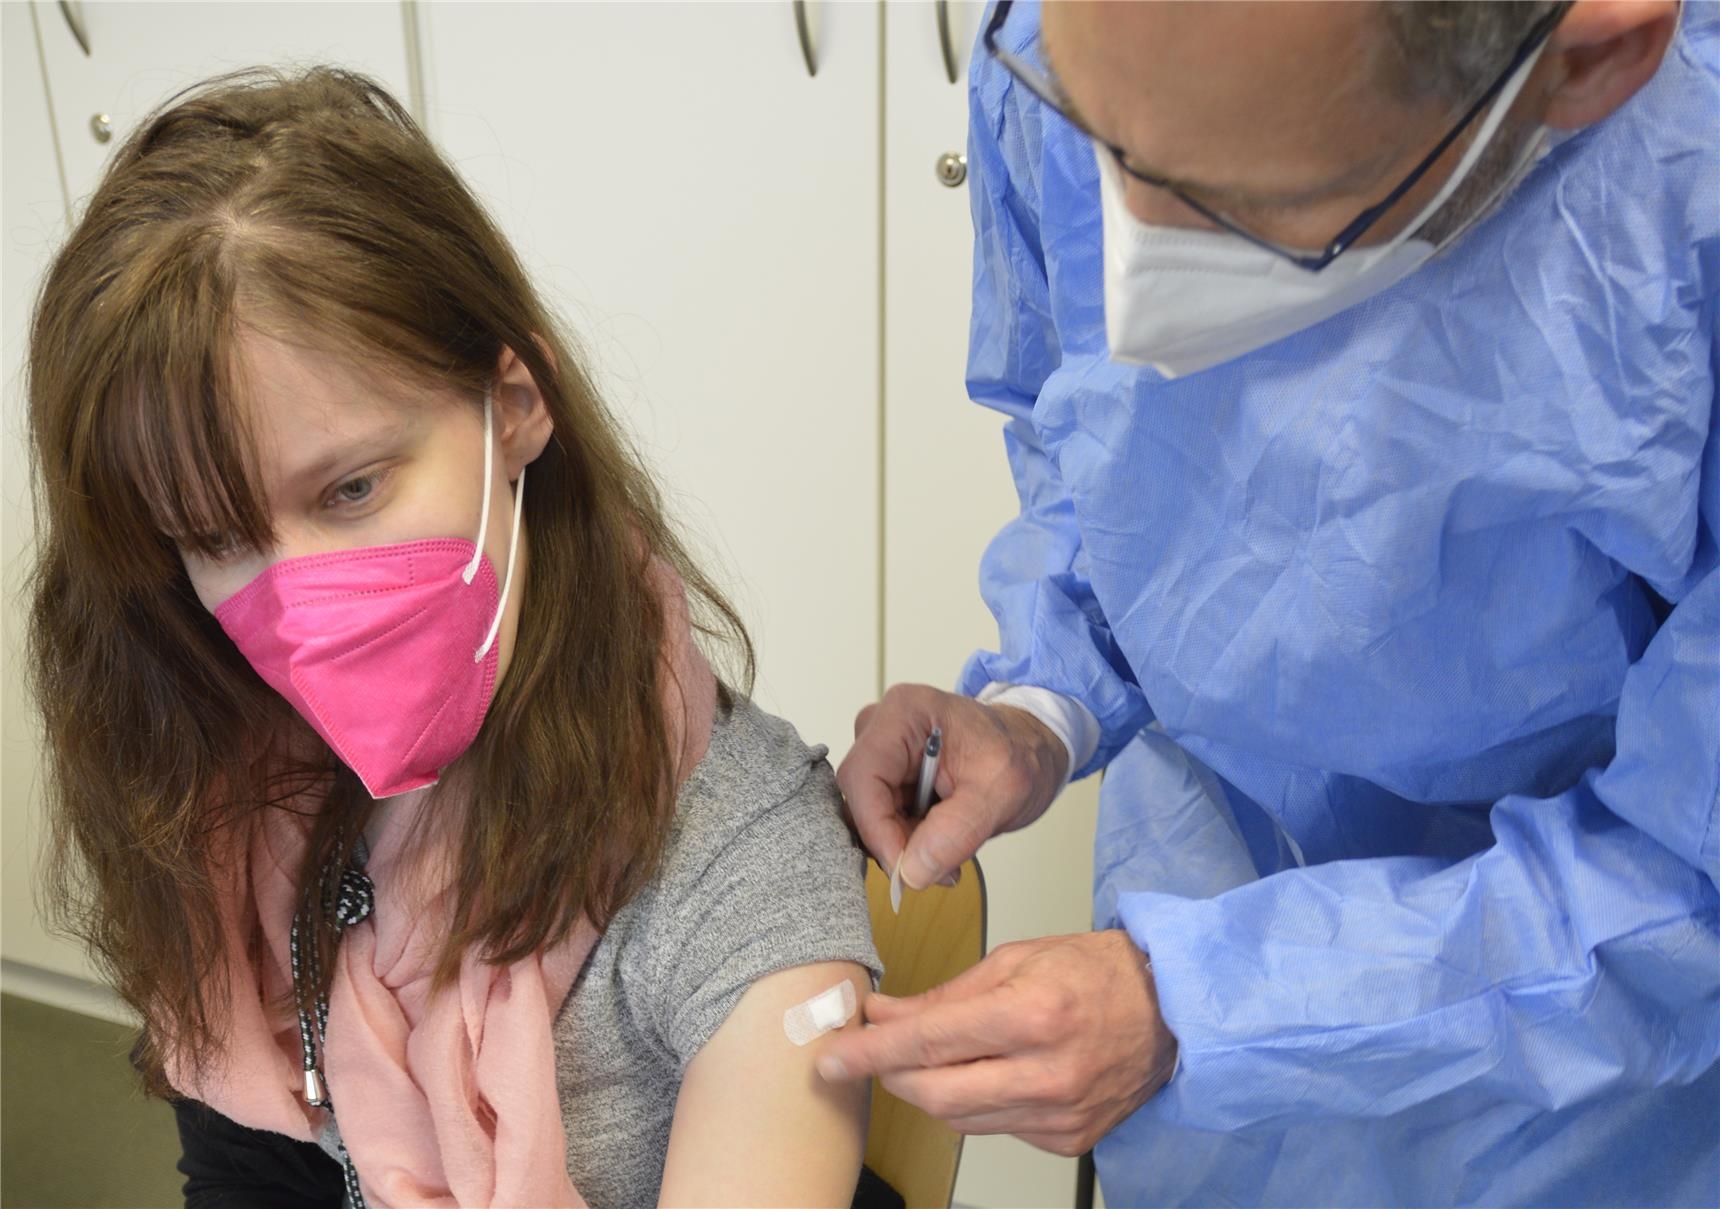 Arzt klebt Pflaster auf Einstichstelle nach Impfung 